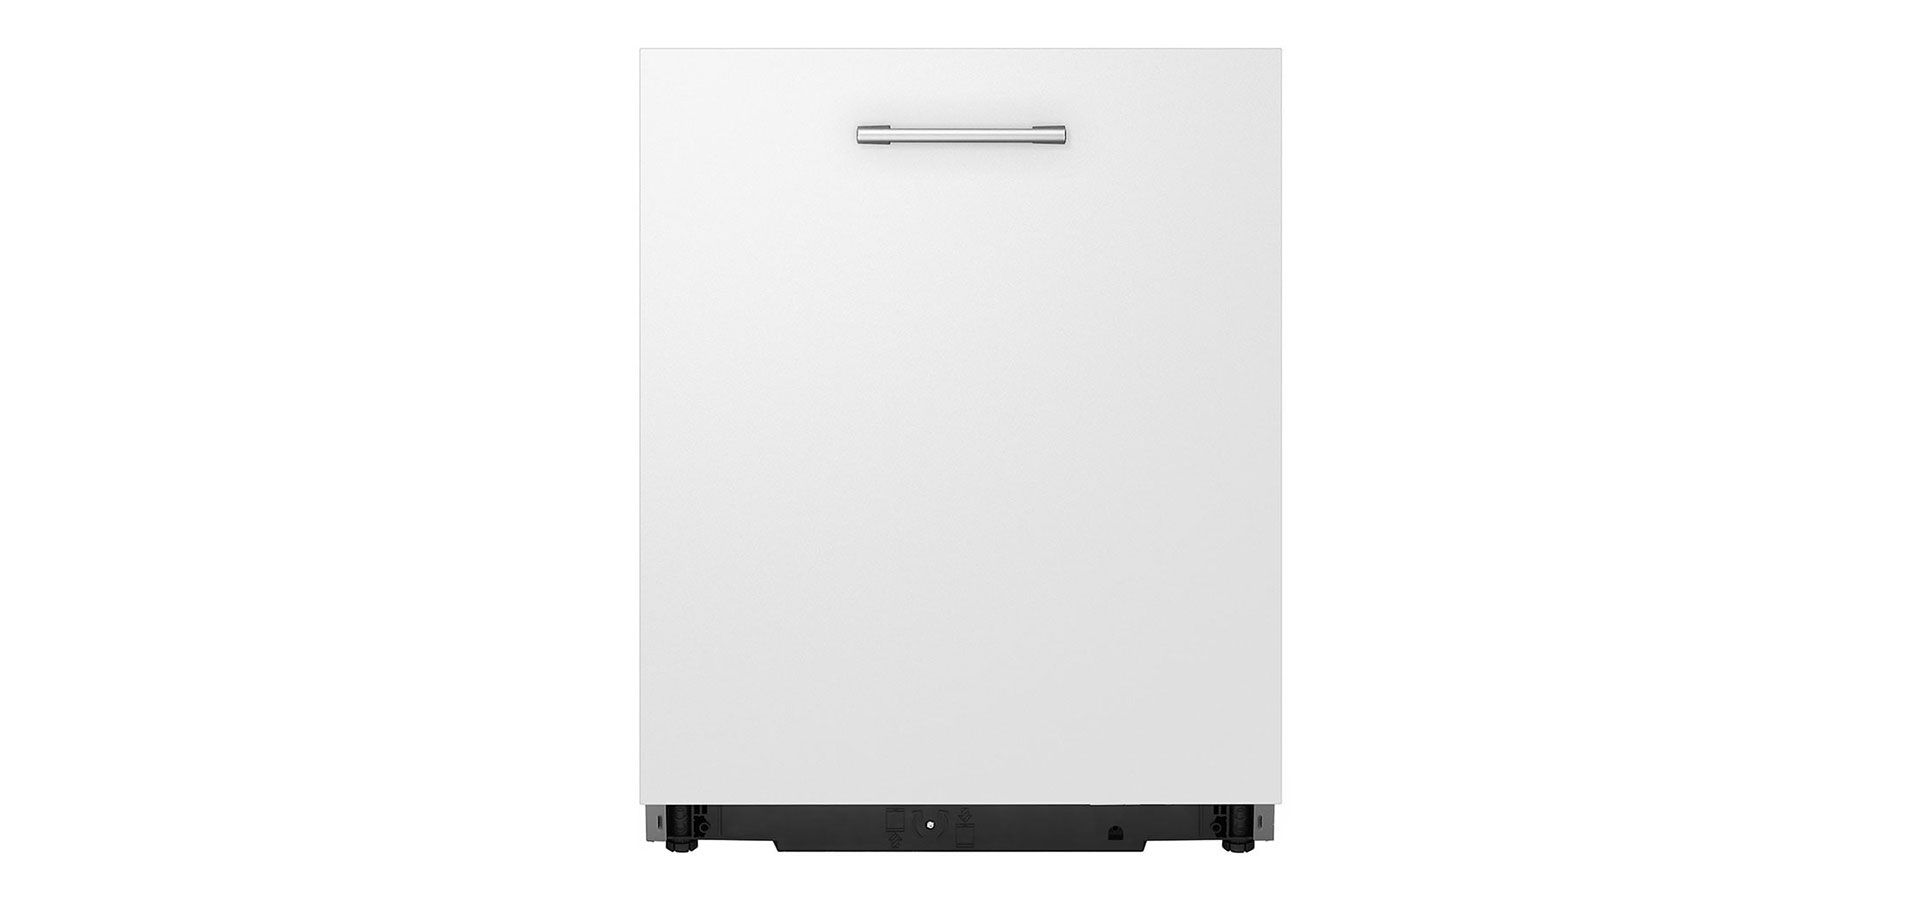 ماشین ظرفشویی ال جی مدل DBC425TS به رنگ سفید